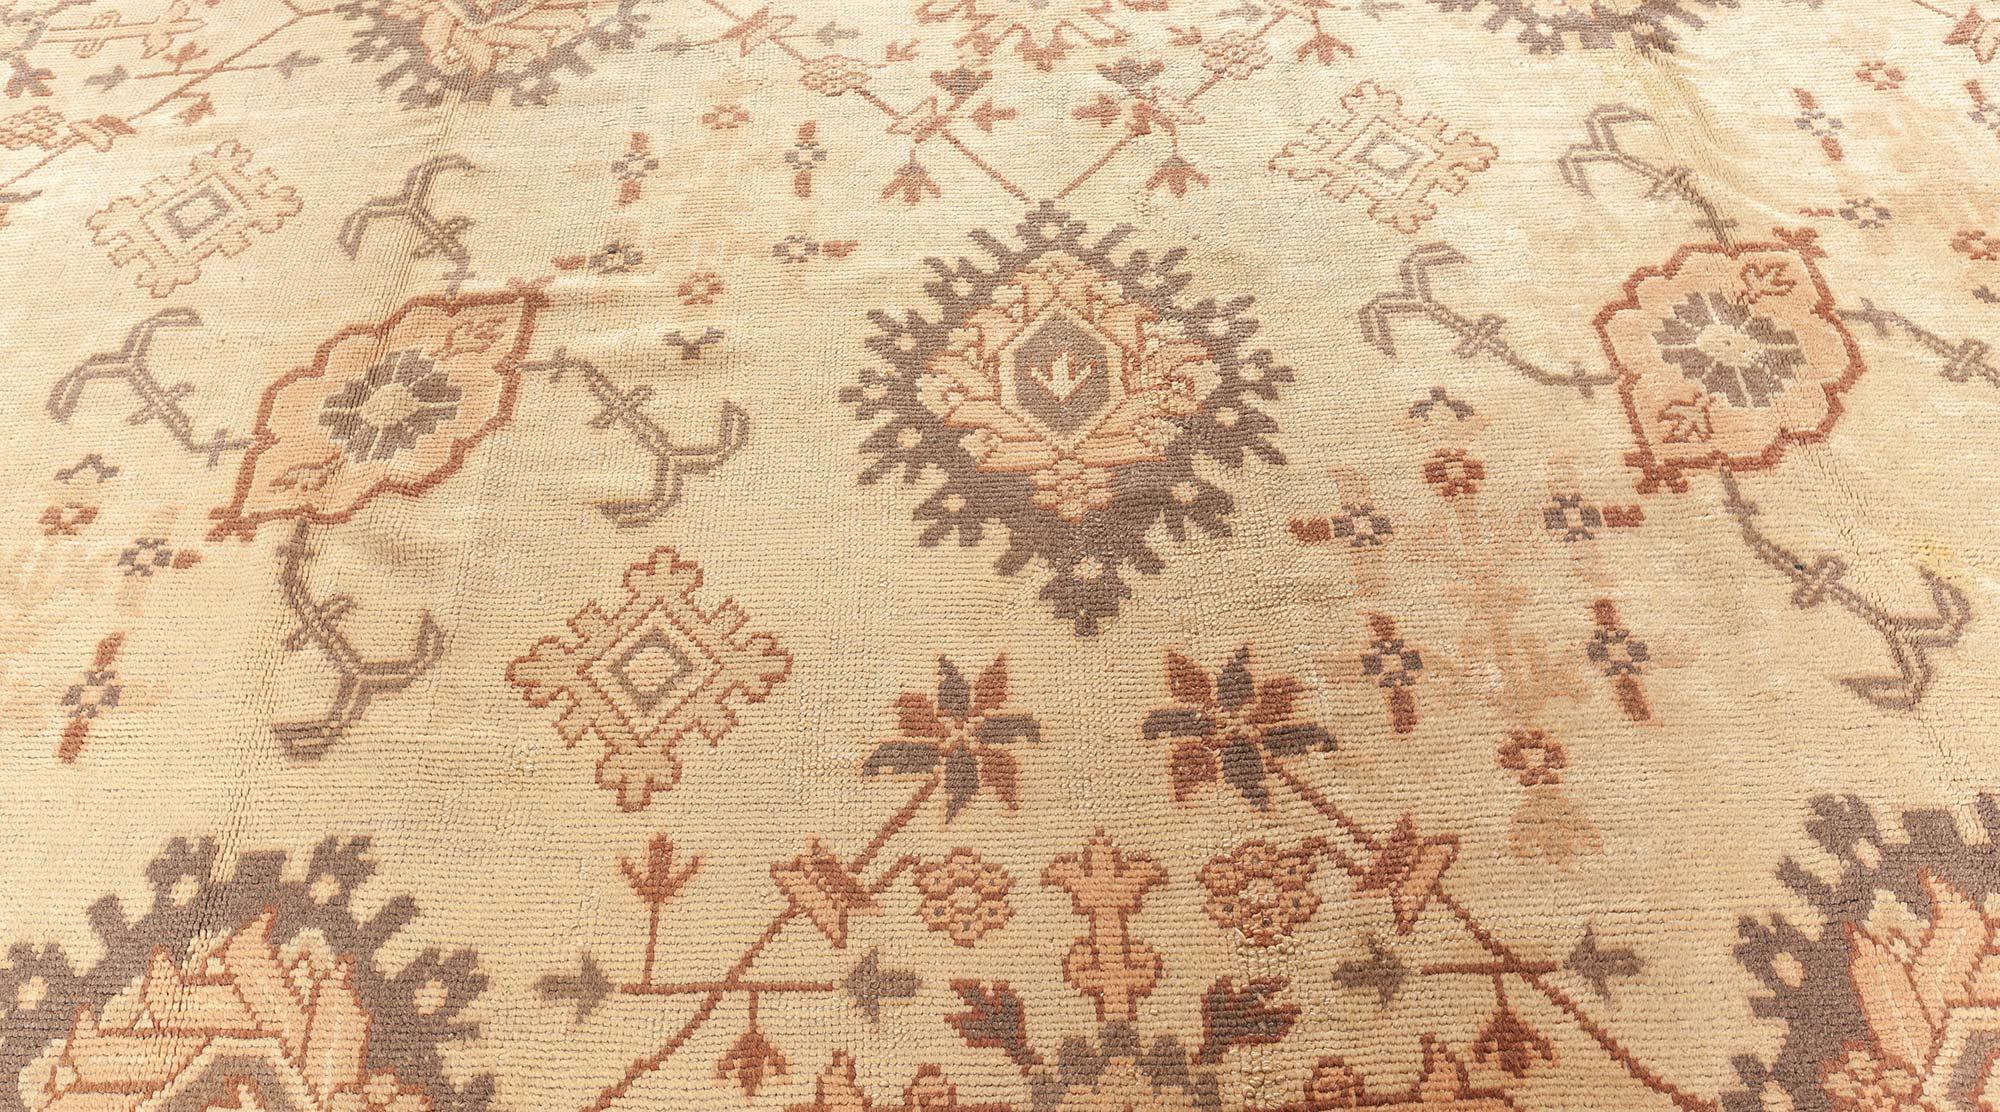 Antique Turkish Oushak rug
Size: 12'2